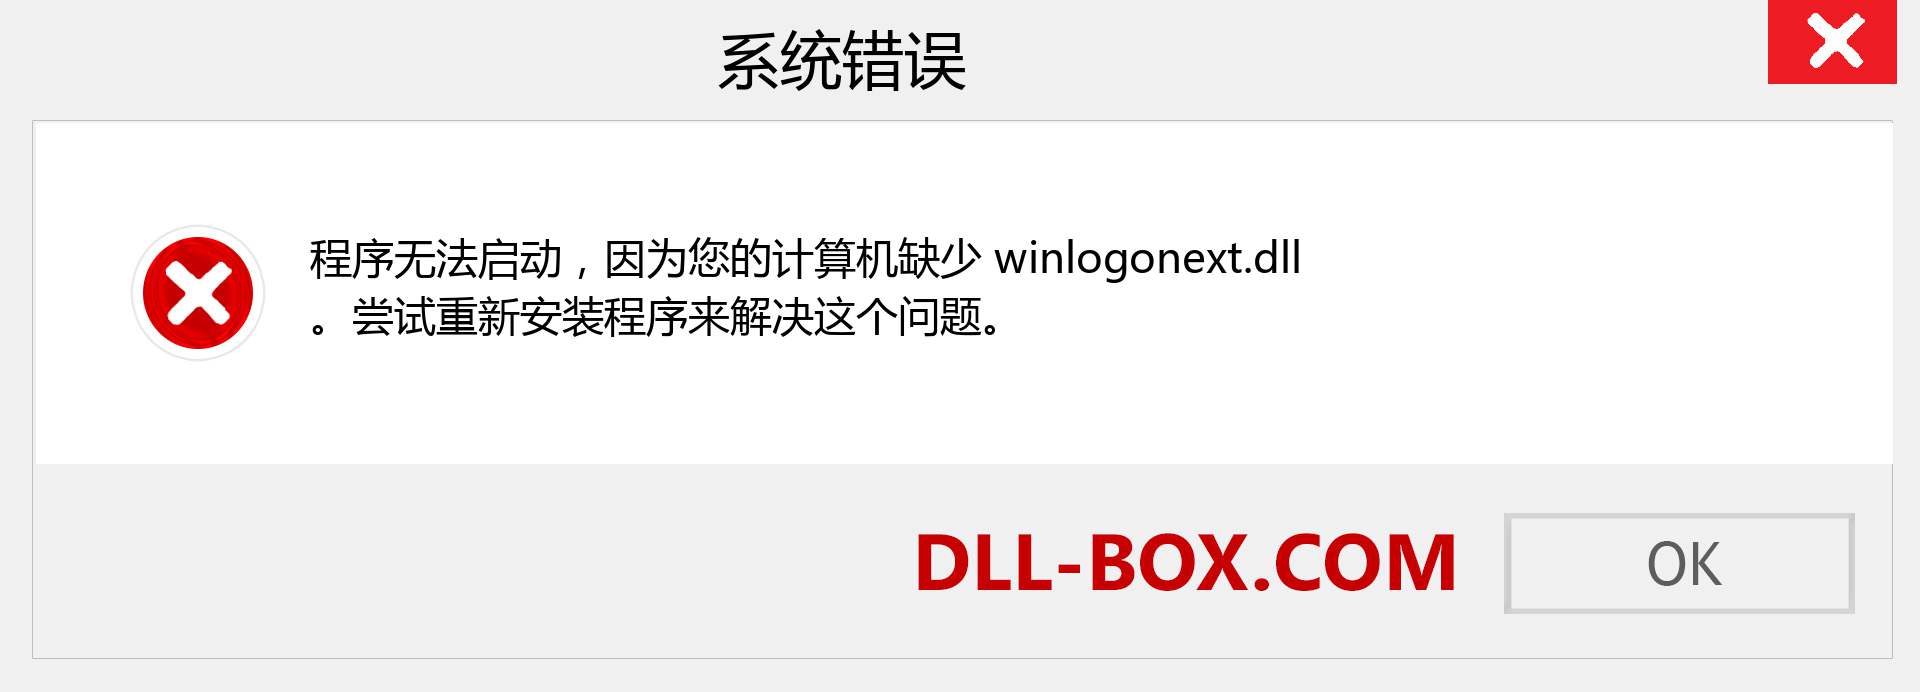 winlogonext.dll 文件丢失？。 适用于 Windows 7、8、10 的下载 - 修复 Windows、照片、图像上的 winlogonext dll 丢失错误